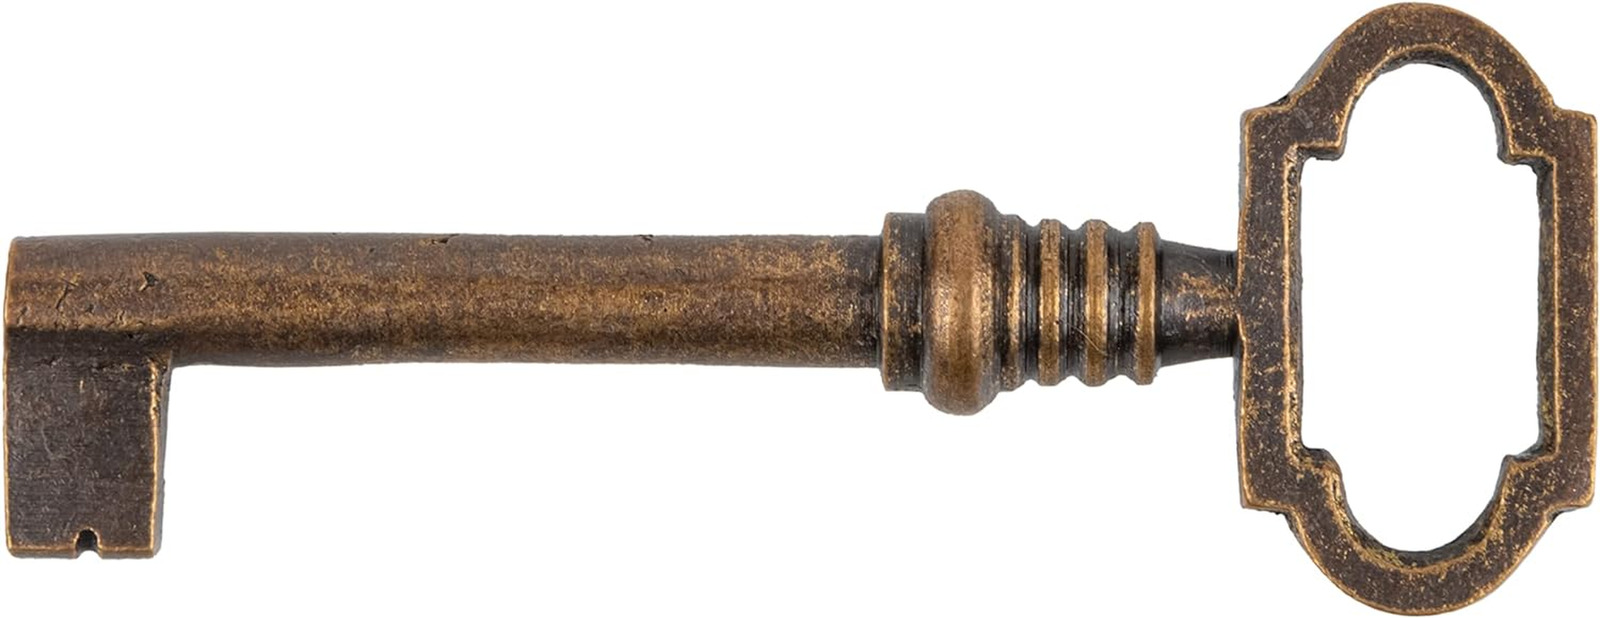 Antique Copper Hollow Barrel Skeleton Key for Cabinet Doors, Dresser Drawers, Gr